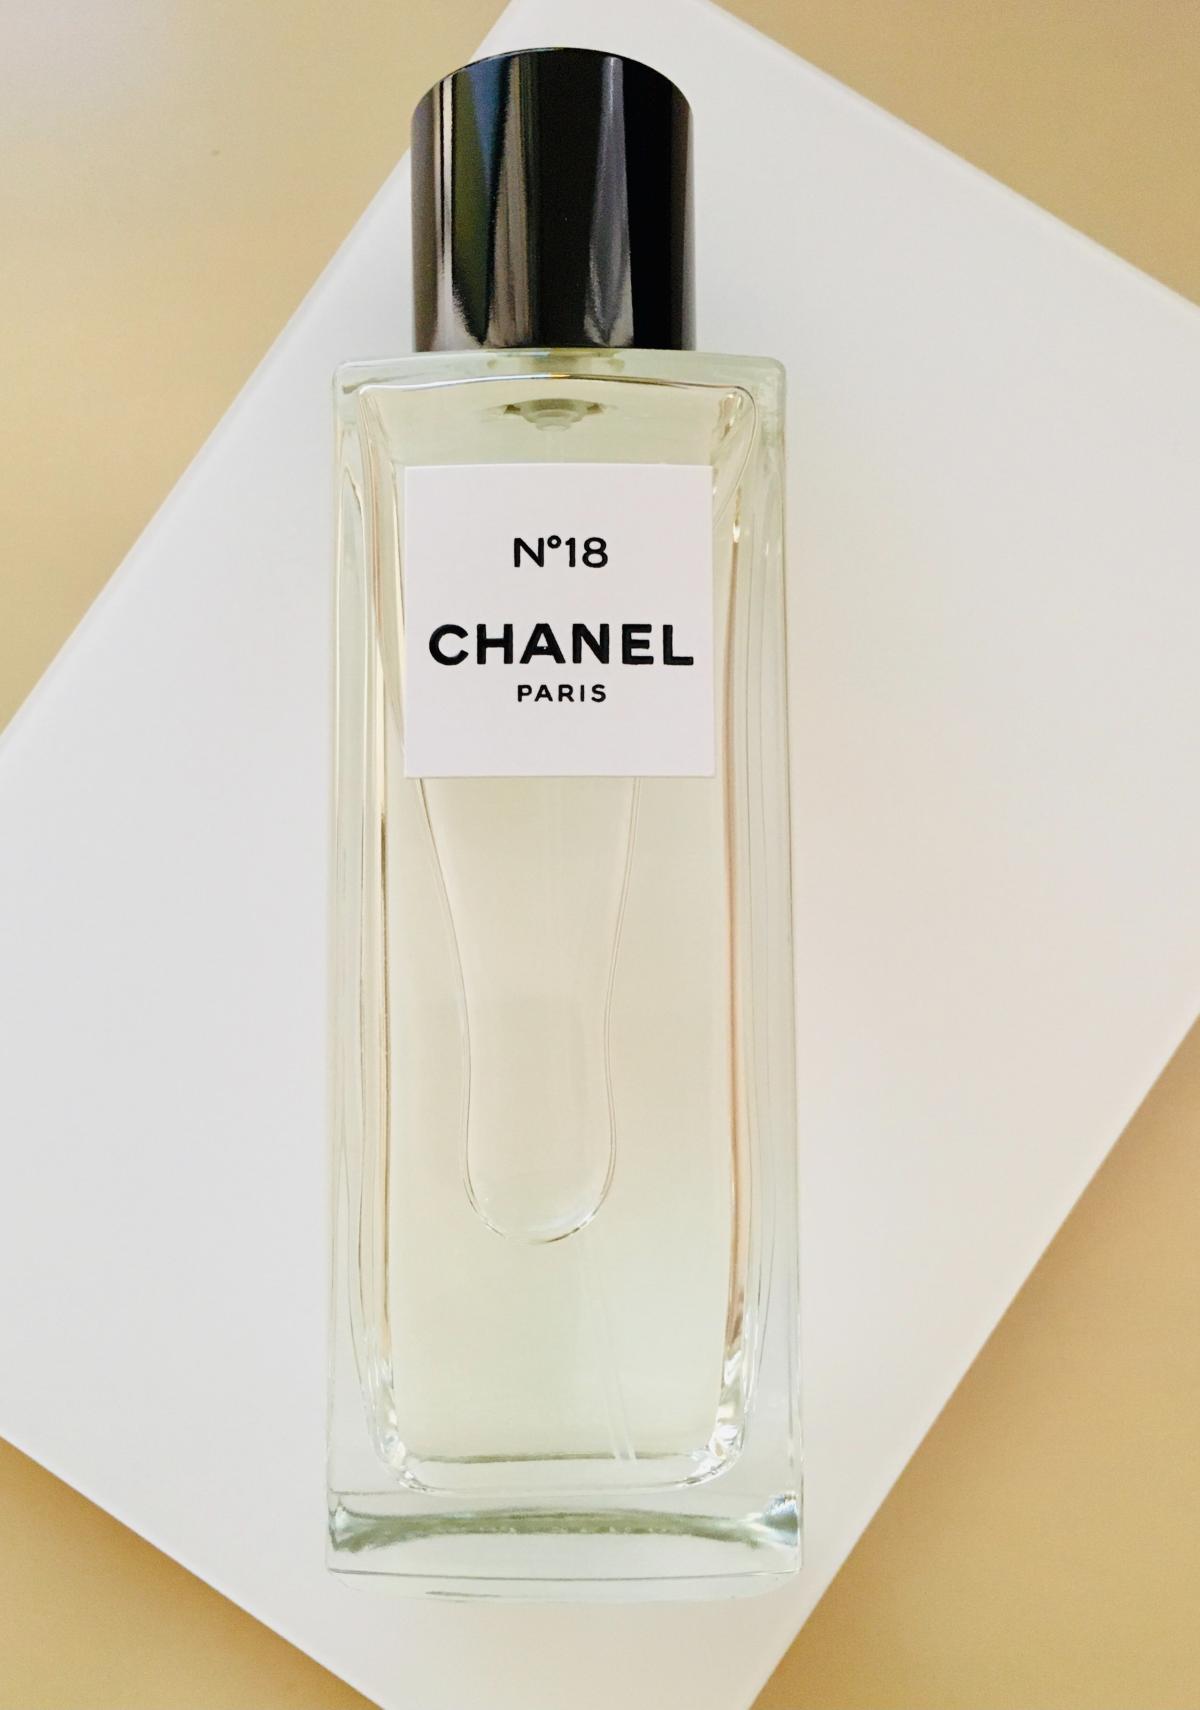 No 18 Eau de Parfum Chanel perfume - a fragrance for women 2016